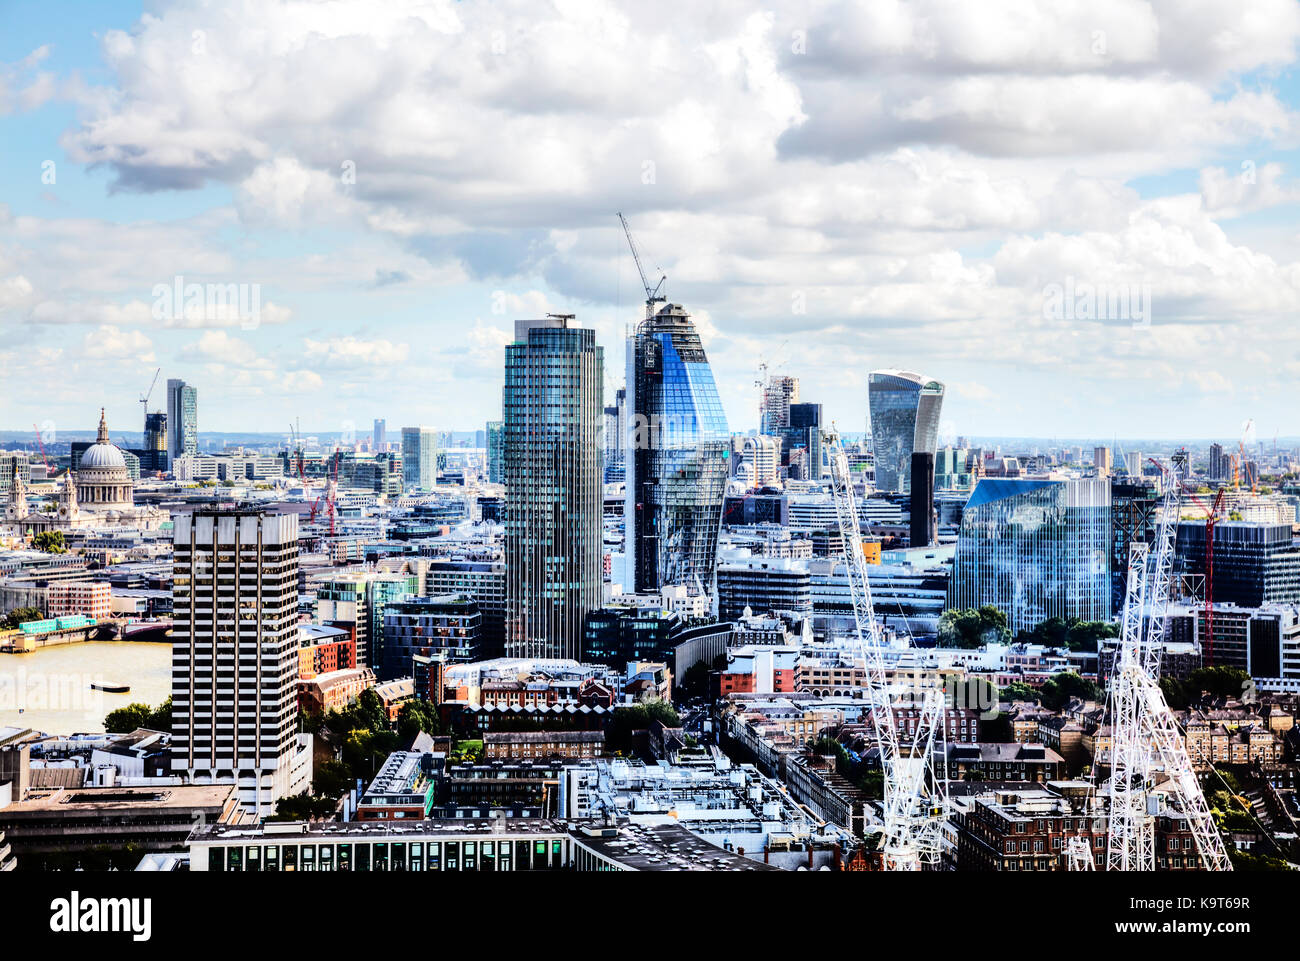 Ciudad de London Square Mile, walkie-talkie, Natwest Tower edificios, construcción de edificios de Londres, Londres, Londres vista aérea, Londres Foto de stock